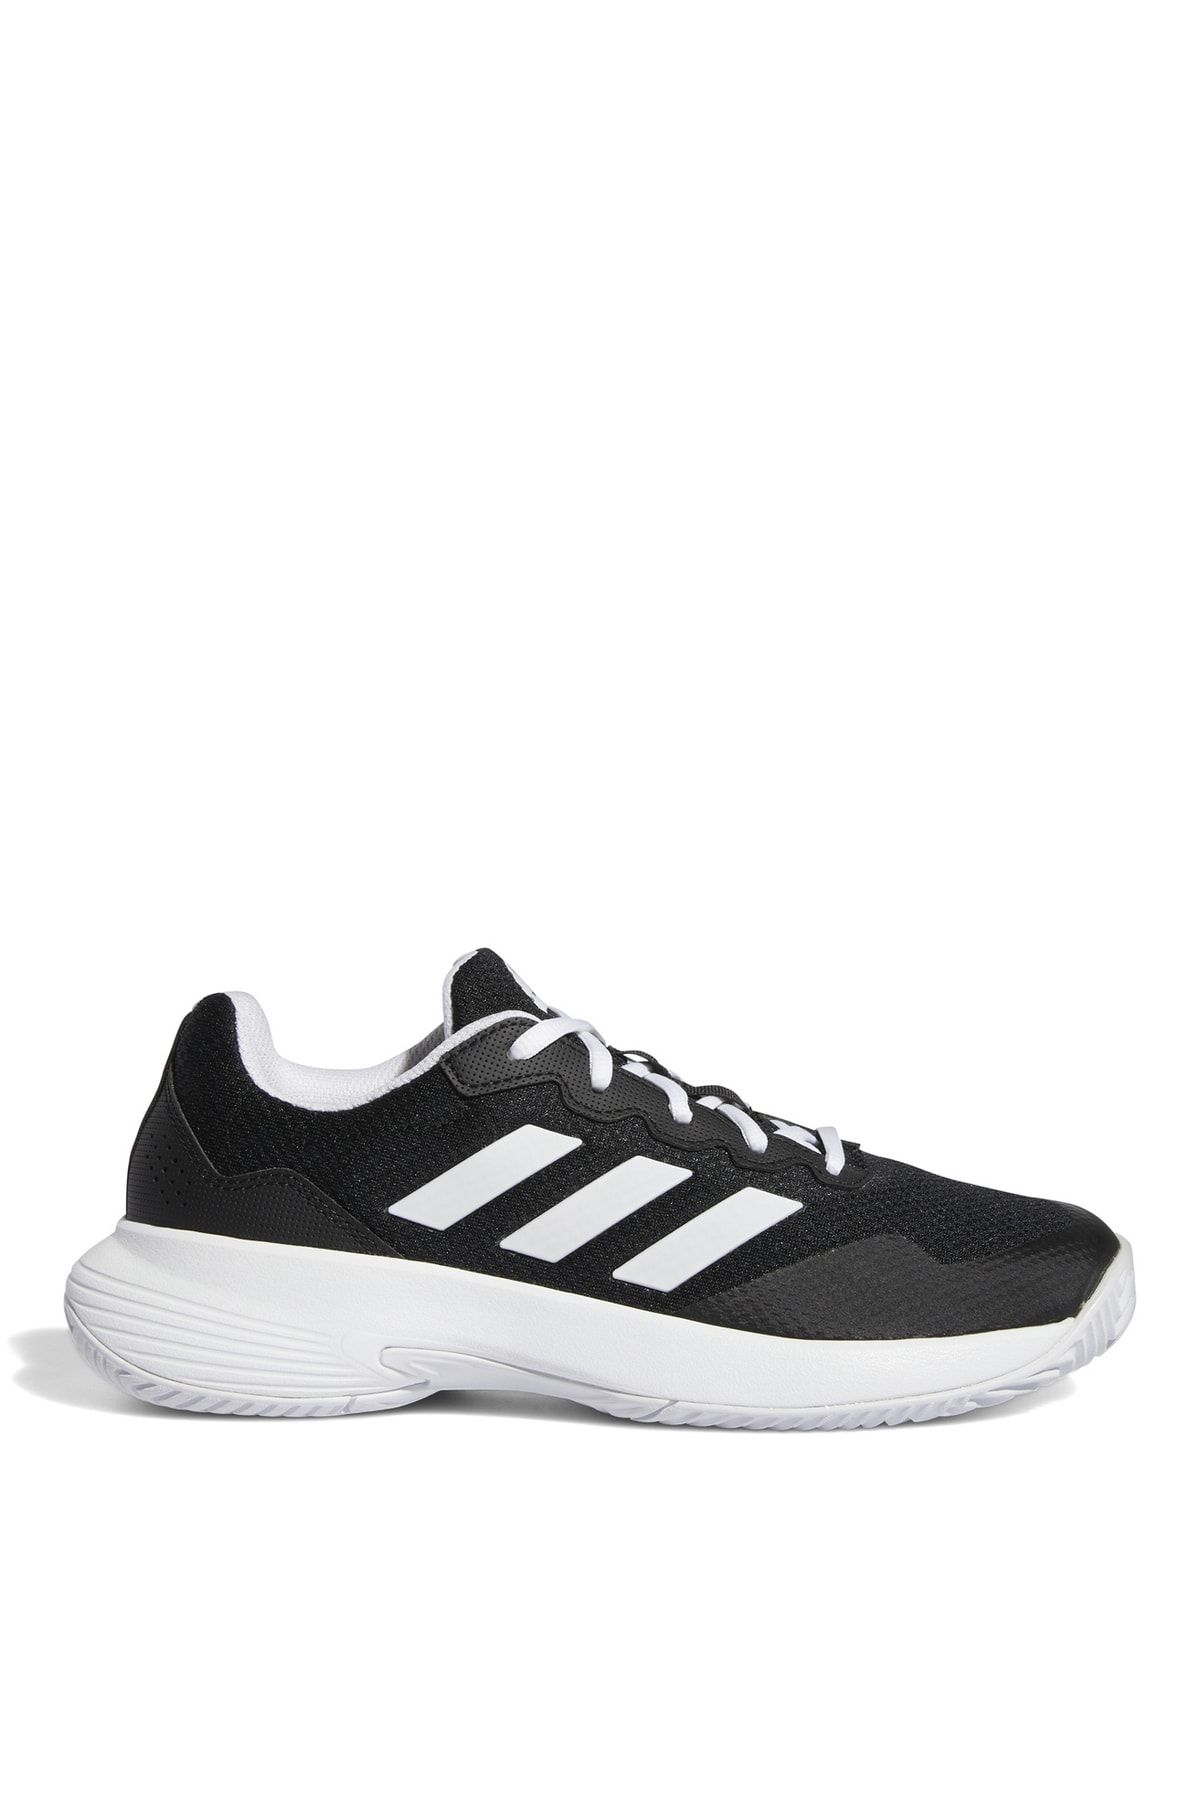 adidas Siyah - Beyaz Kadın Tenis Ayakkabısı Gz0694 Gamecourt 2 W